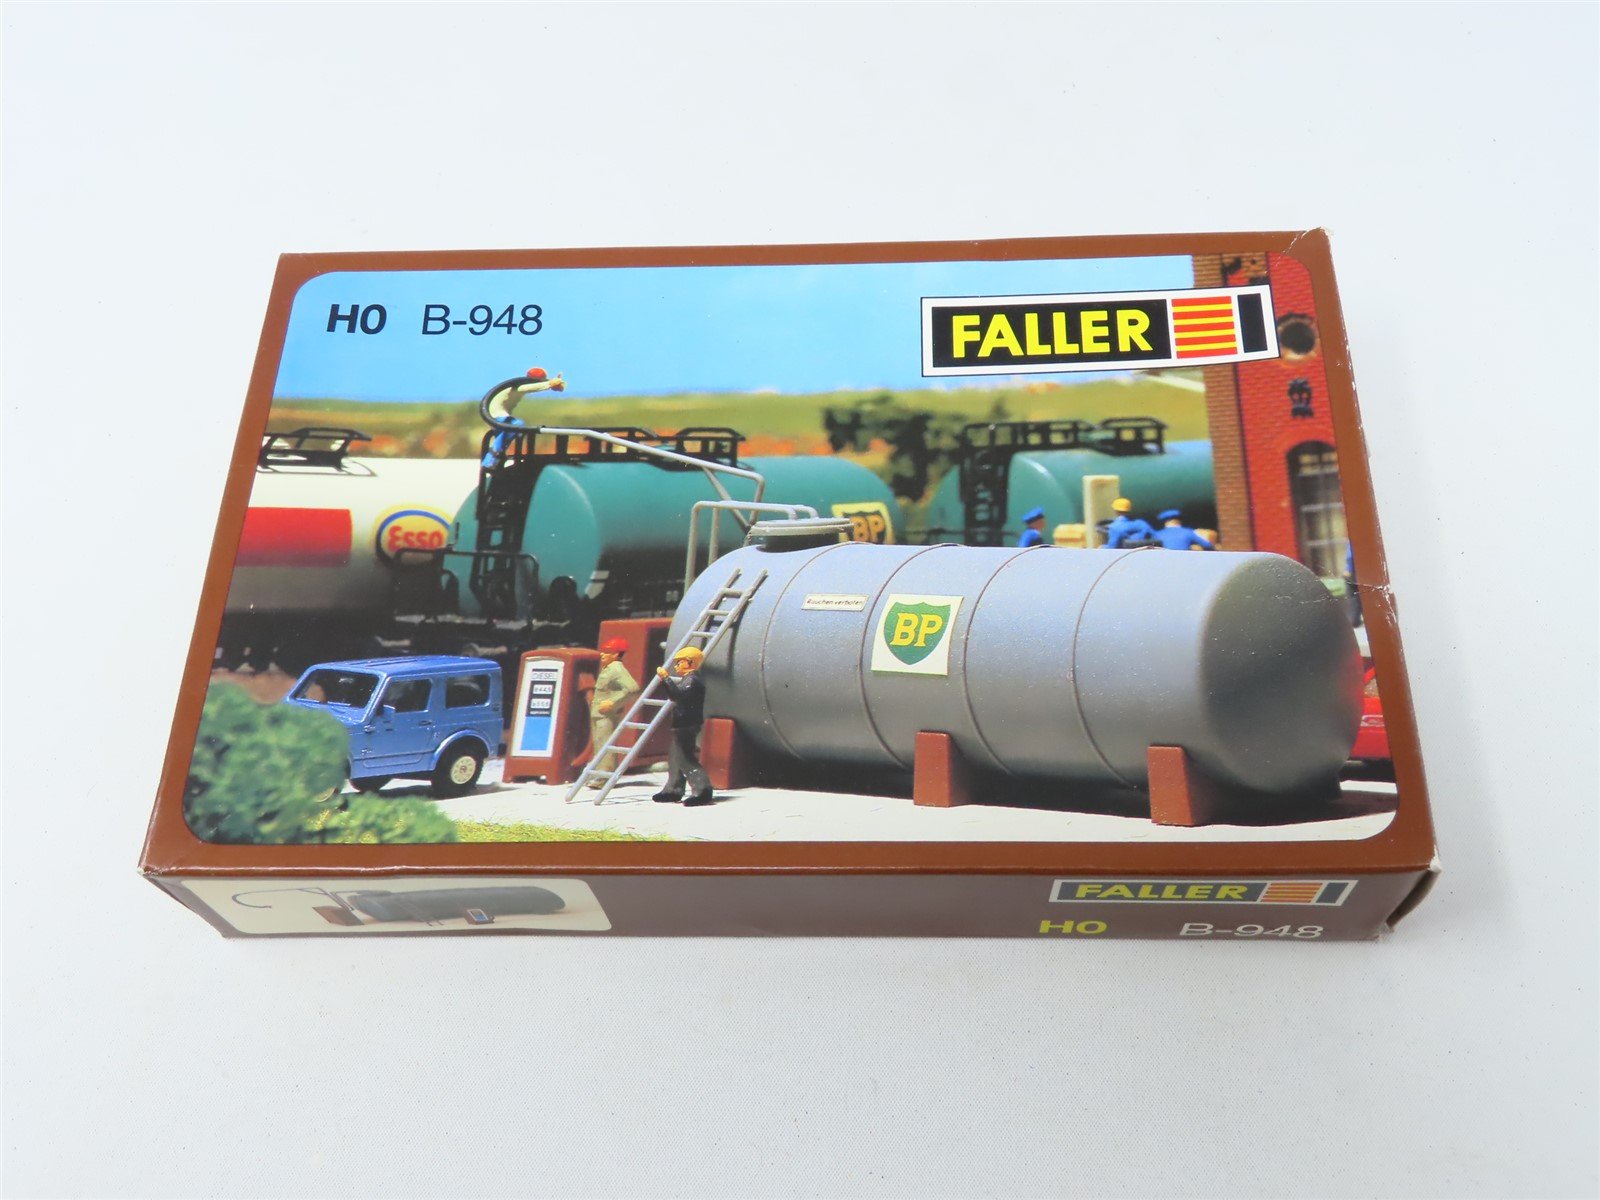 HO 1/87 Scale Faller Plastic Kit #B-948 Oil Tank